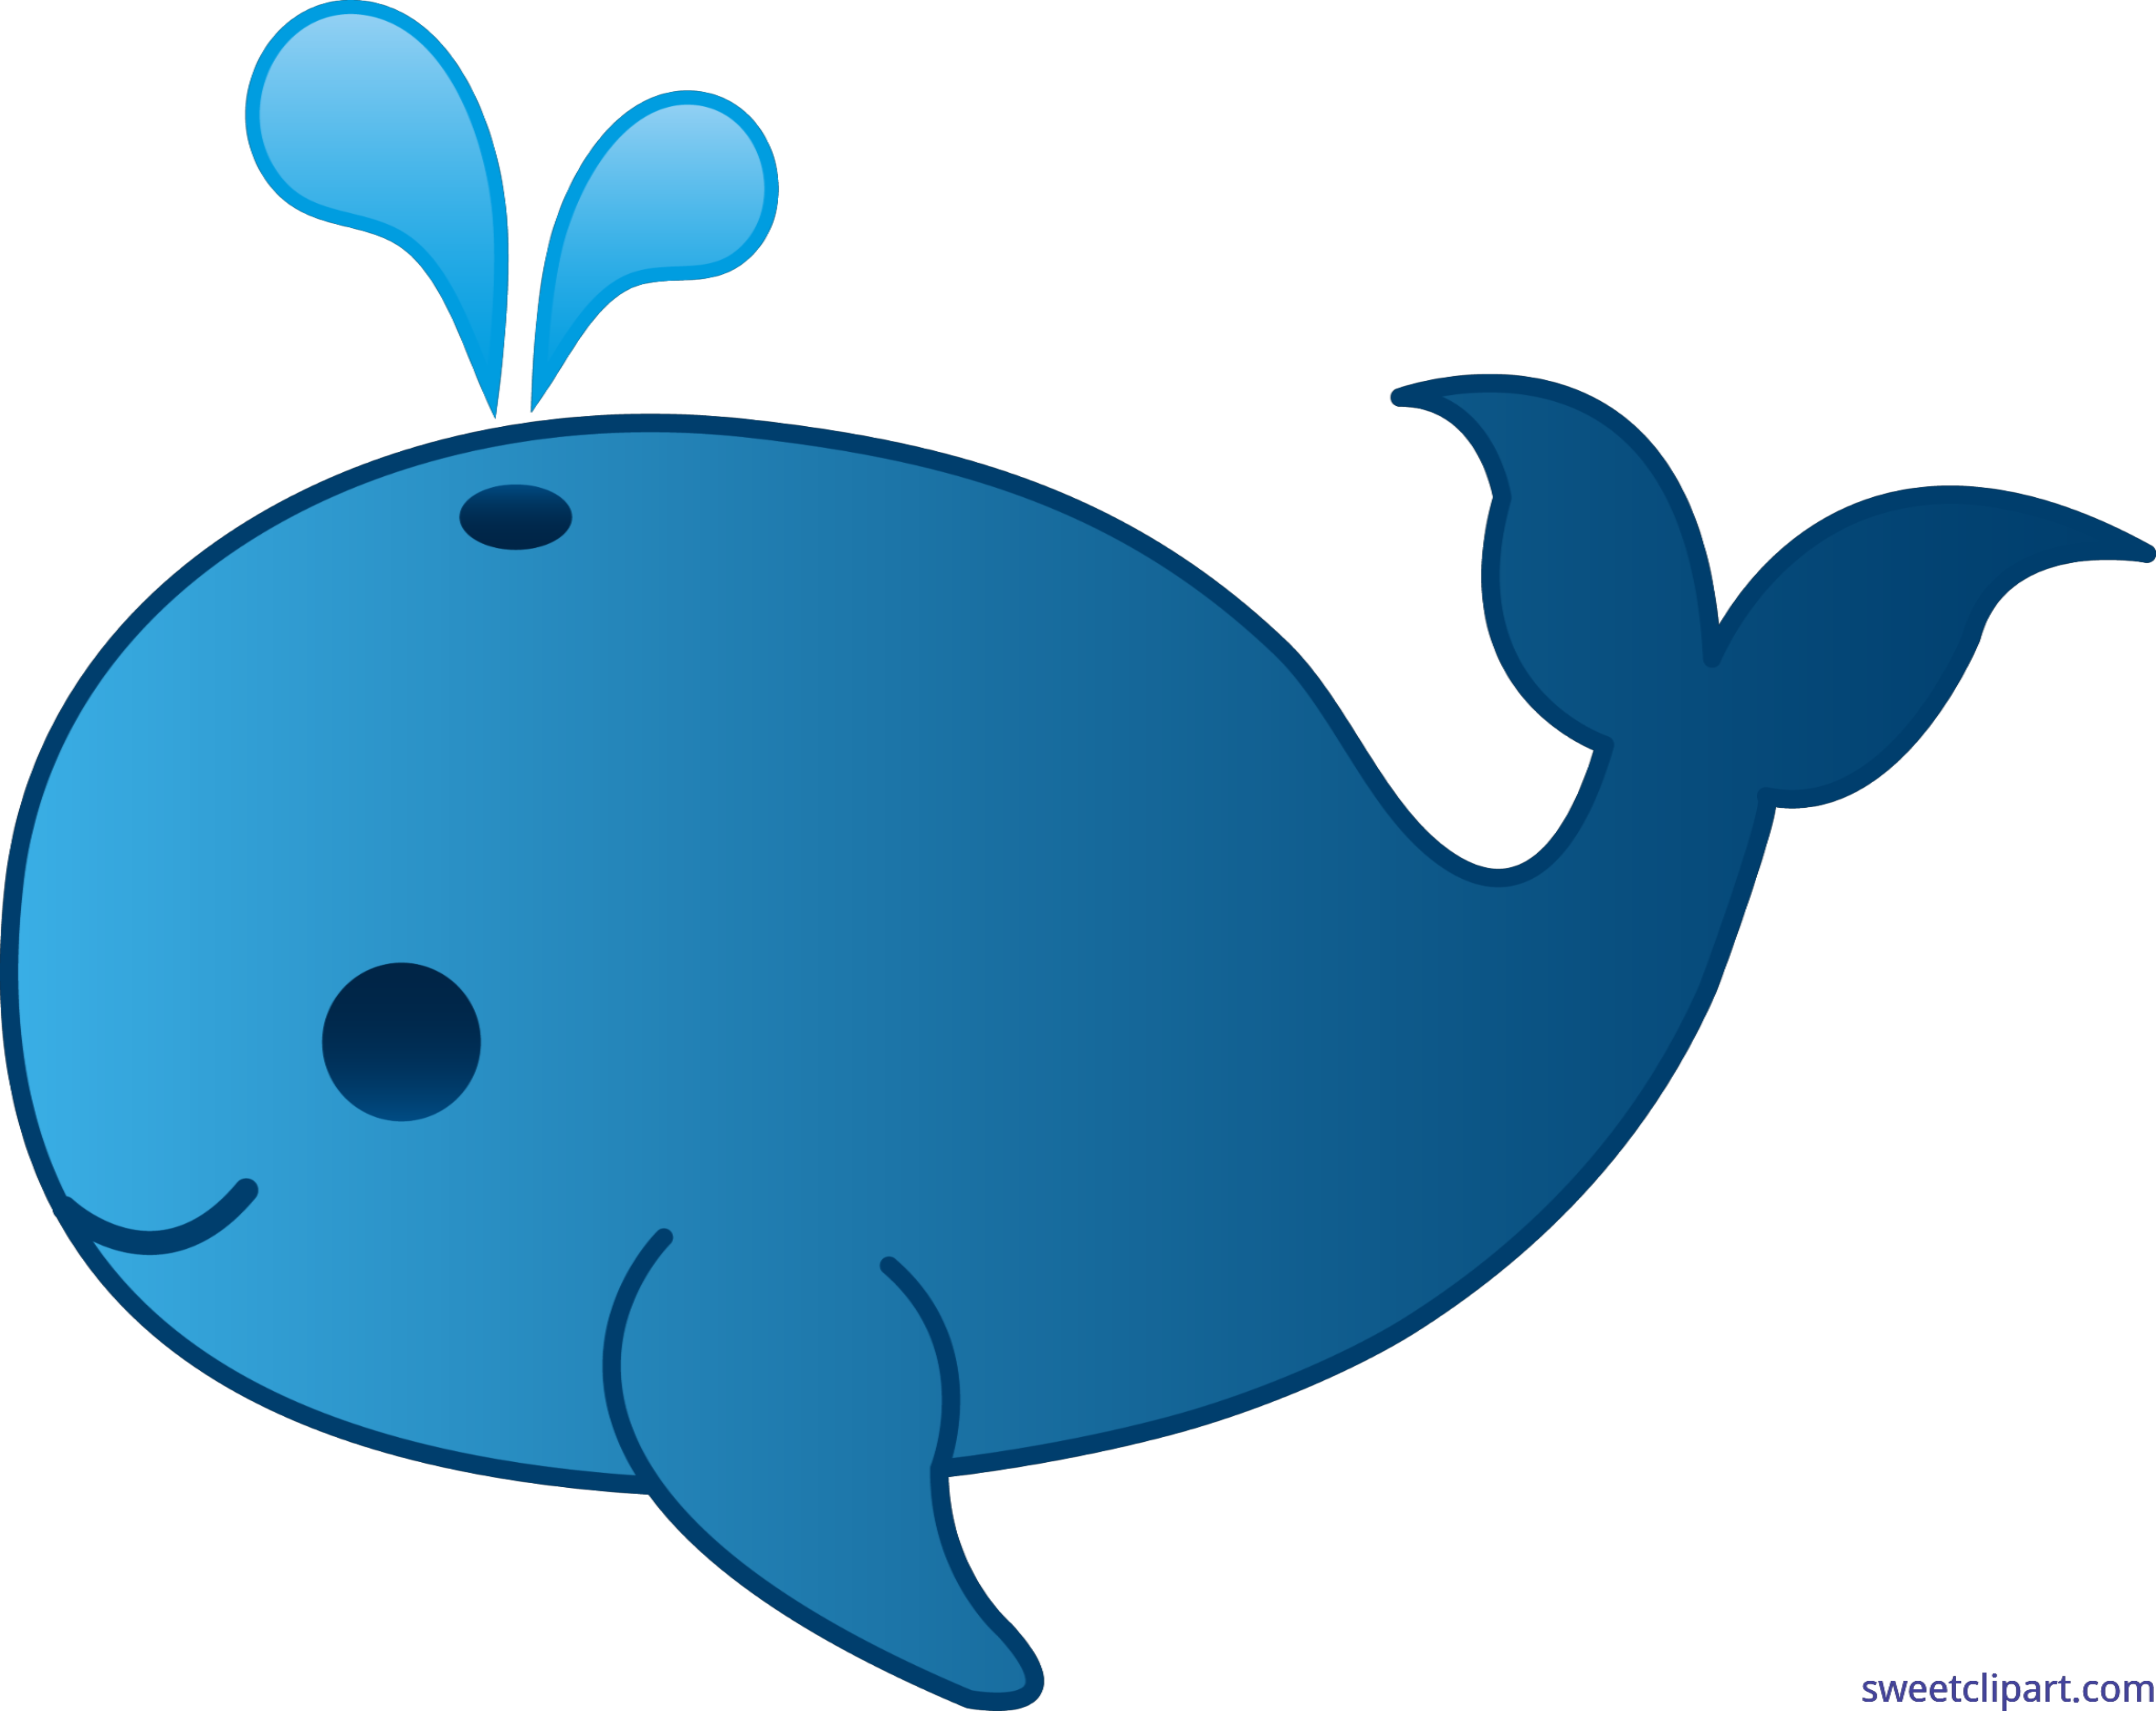 Blue whale clip art. Water clipart cute